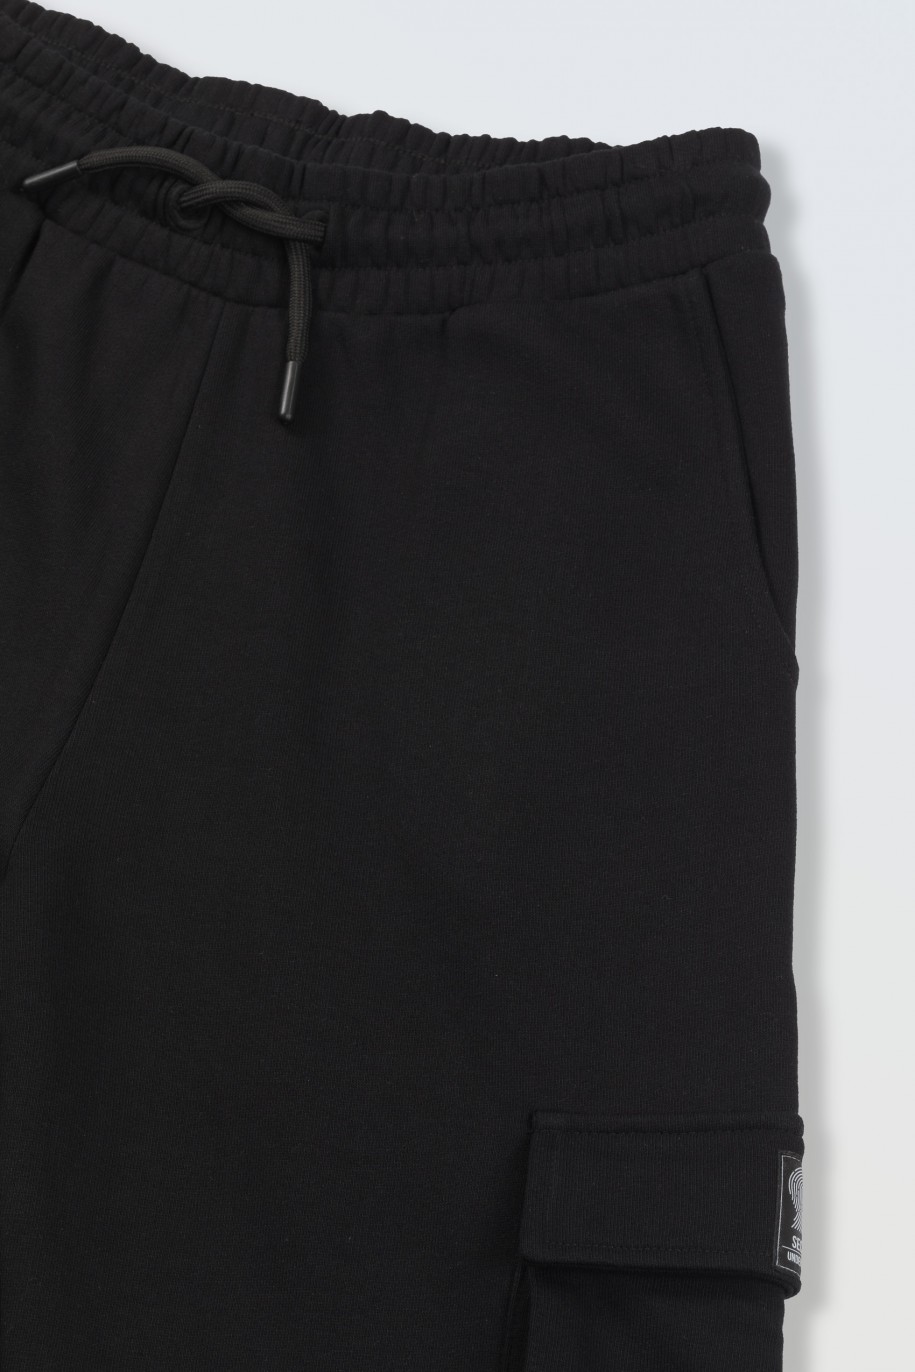 Czarne spodnie dresowe z przestrzennymi kieszeniami - 45921